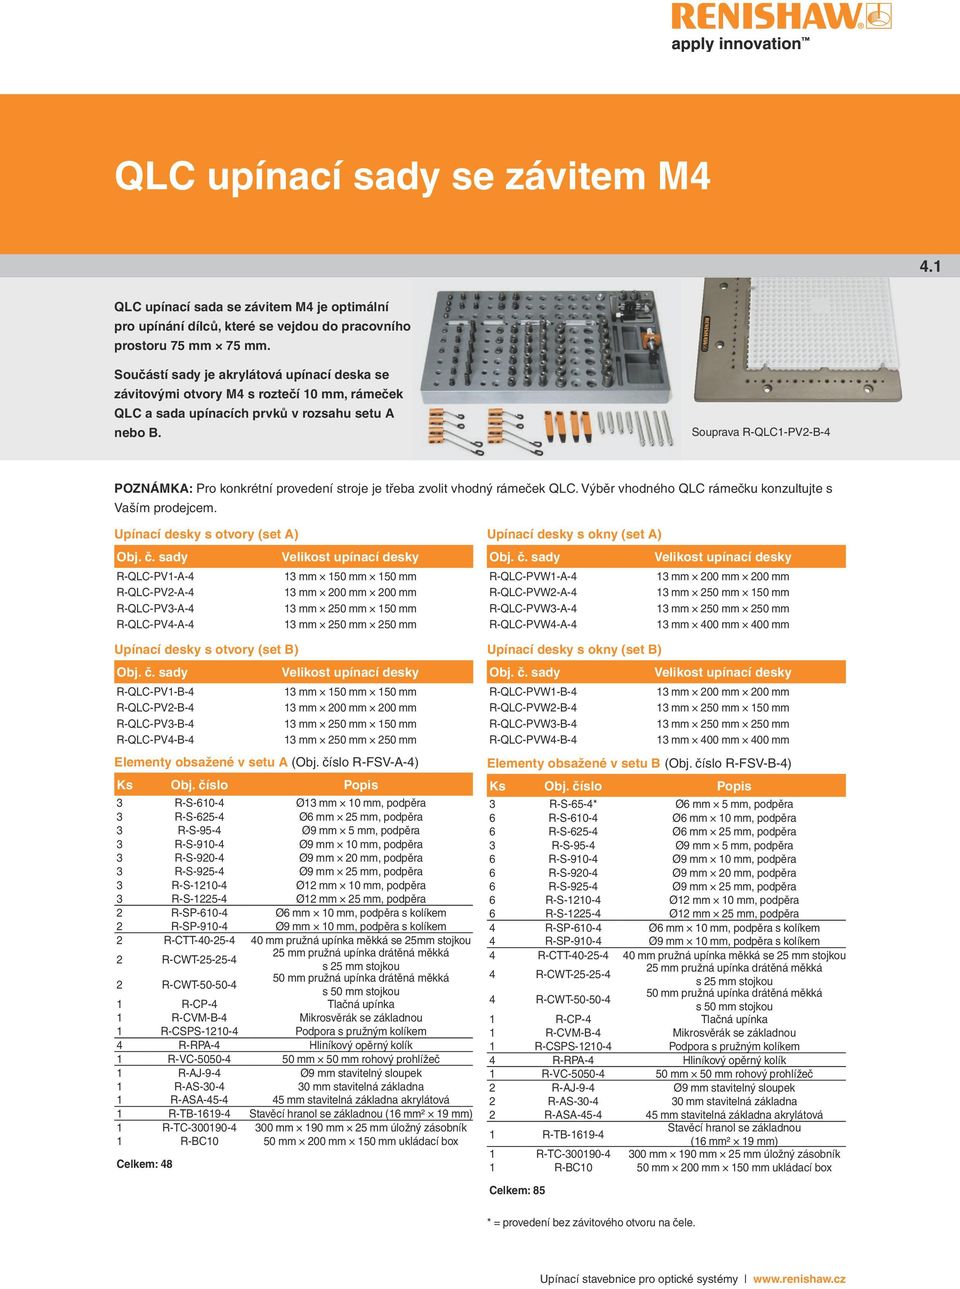 Souprava R-QLC1-PV2-B-4 POZNÁMK: Pro konkrétní provedení stroje je třeba zvolit vhodný rámeček QLC. Výběr vhodného QLC rámečku konzultujte s Vaším prodejcem. Upínací desky s otvory (set ) Obj. č.